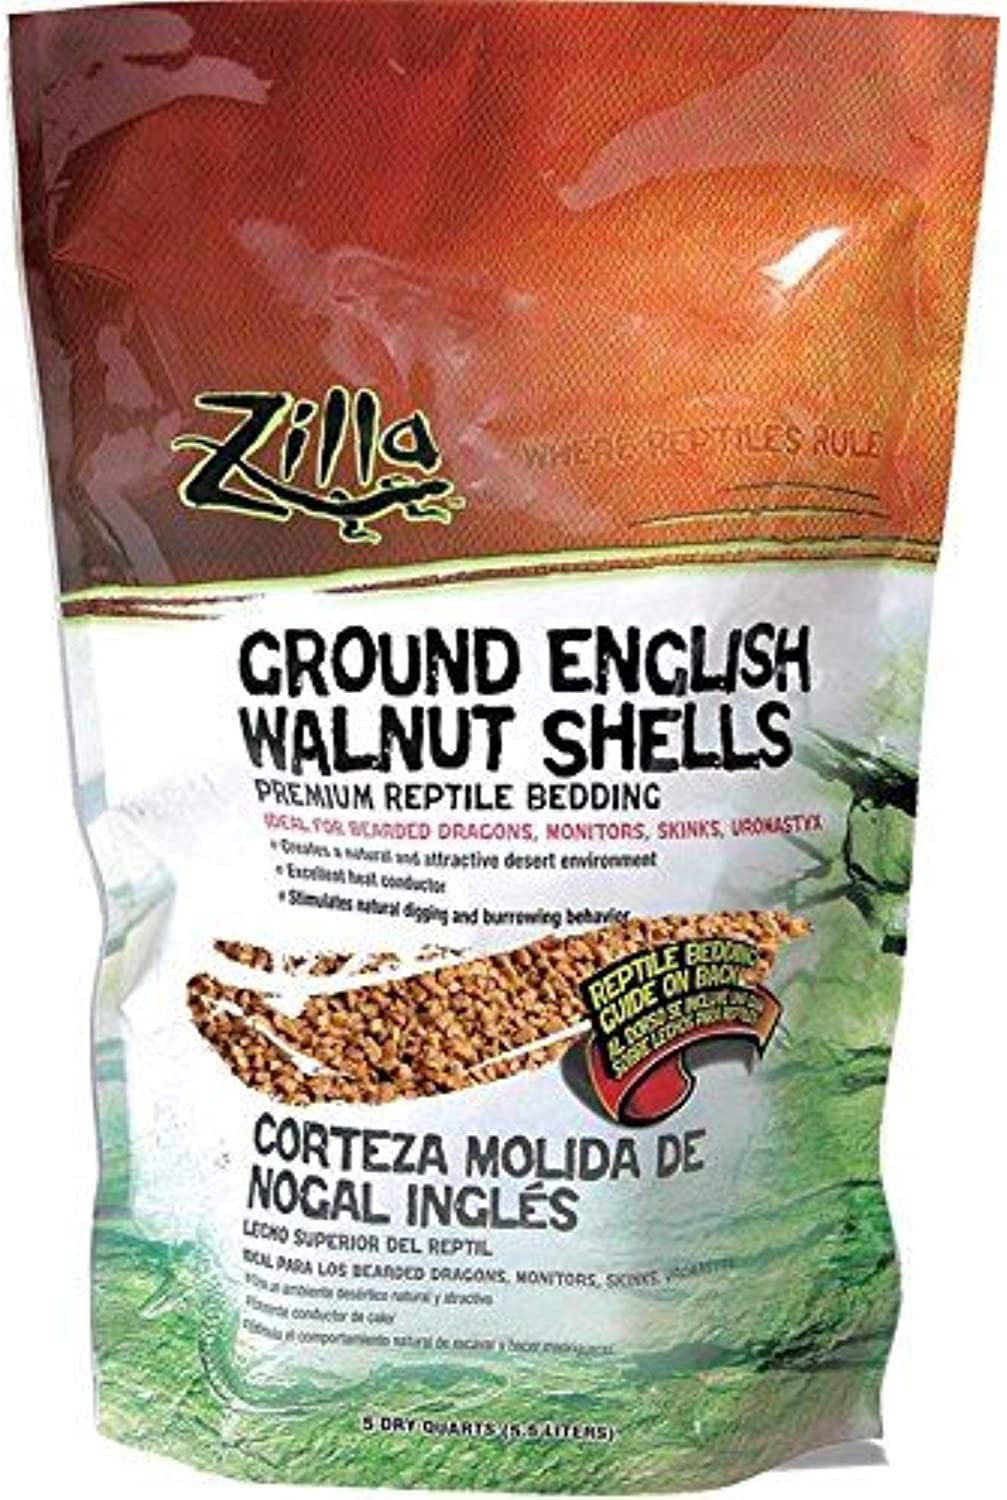 Ground Walnut Shells